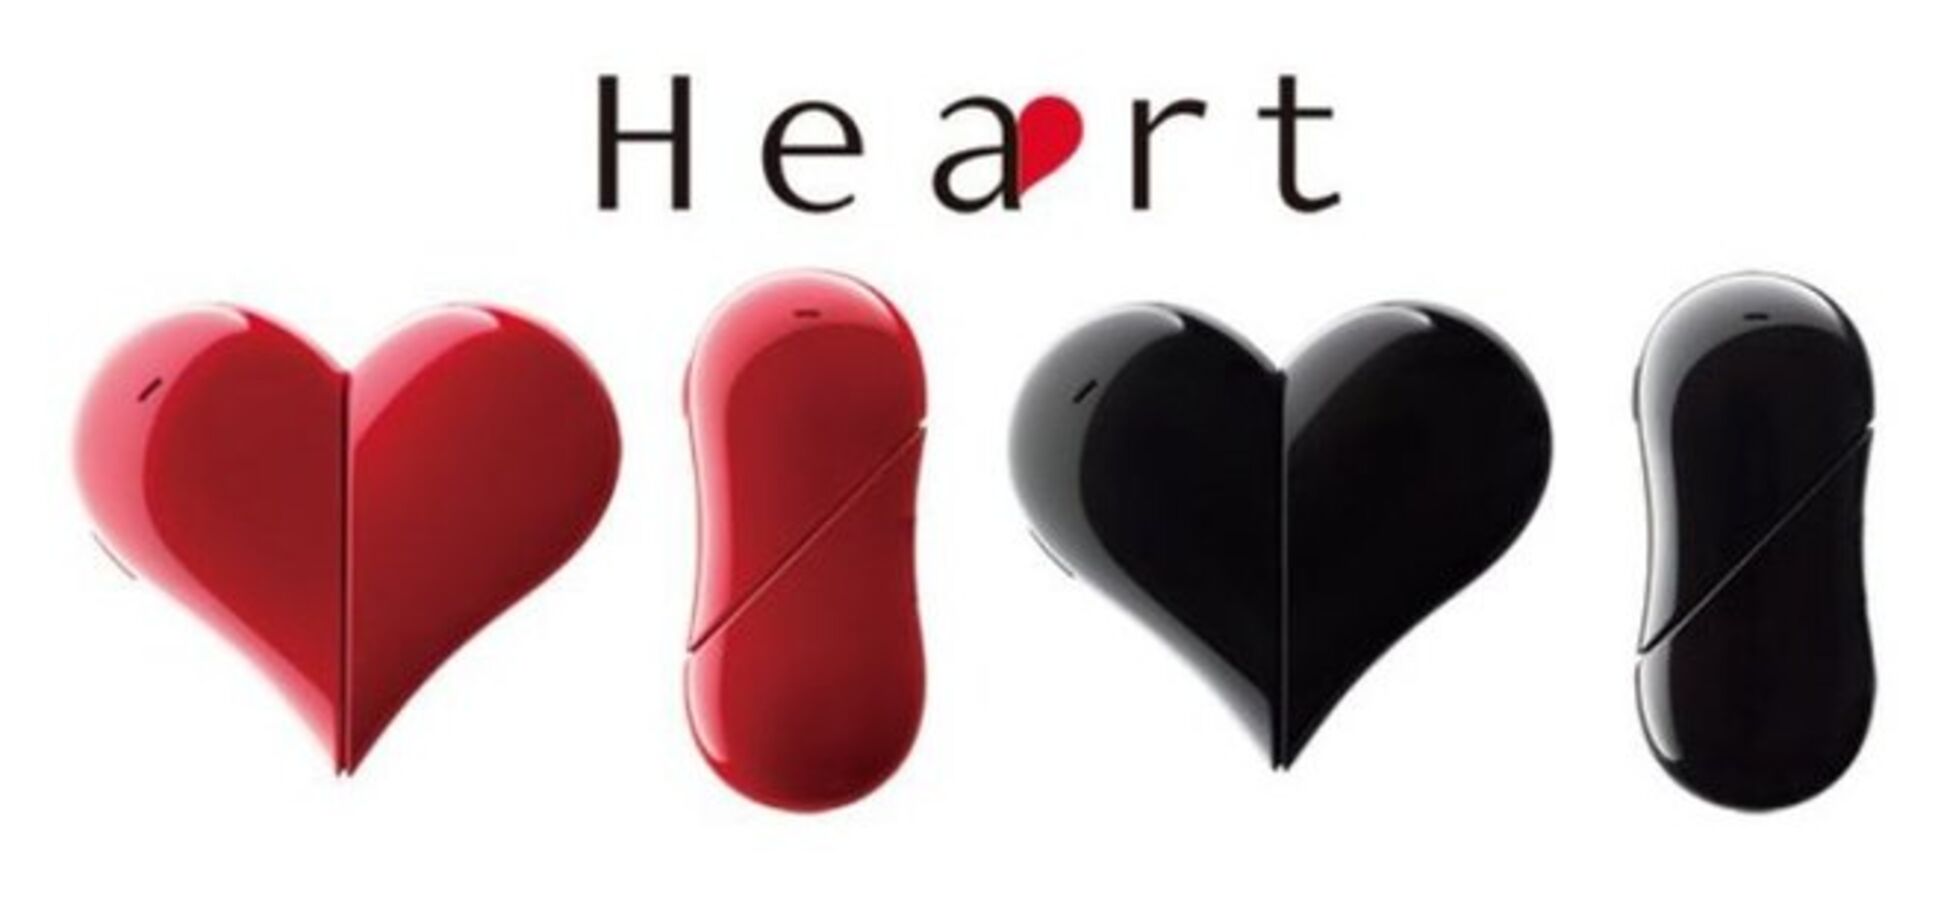 Японская компания выпустила мобильный телефон в форме сердца